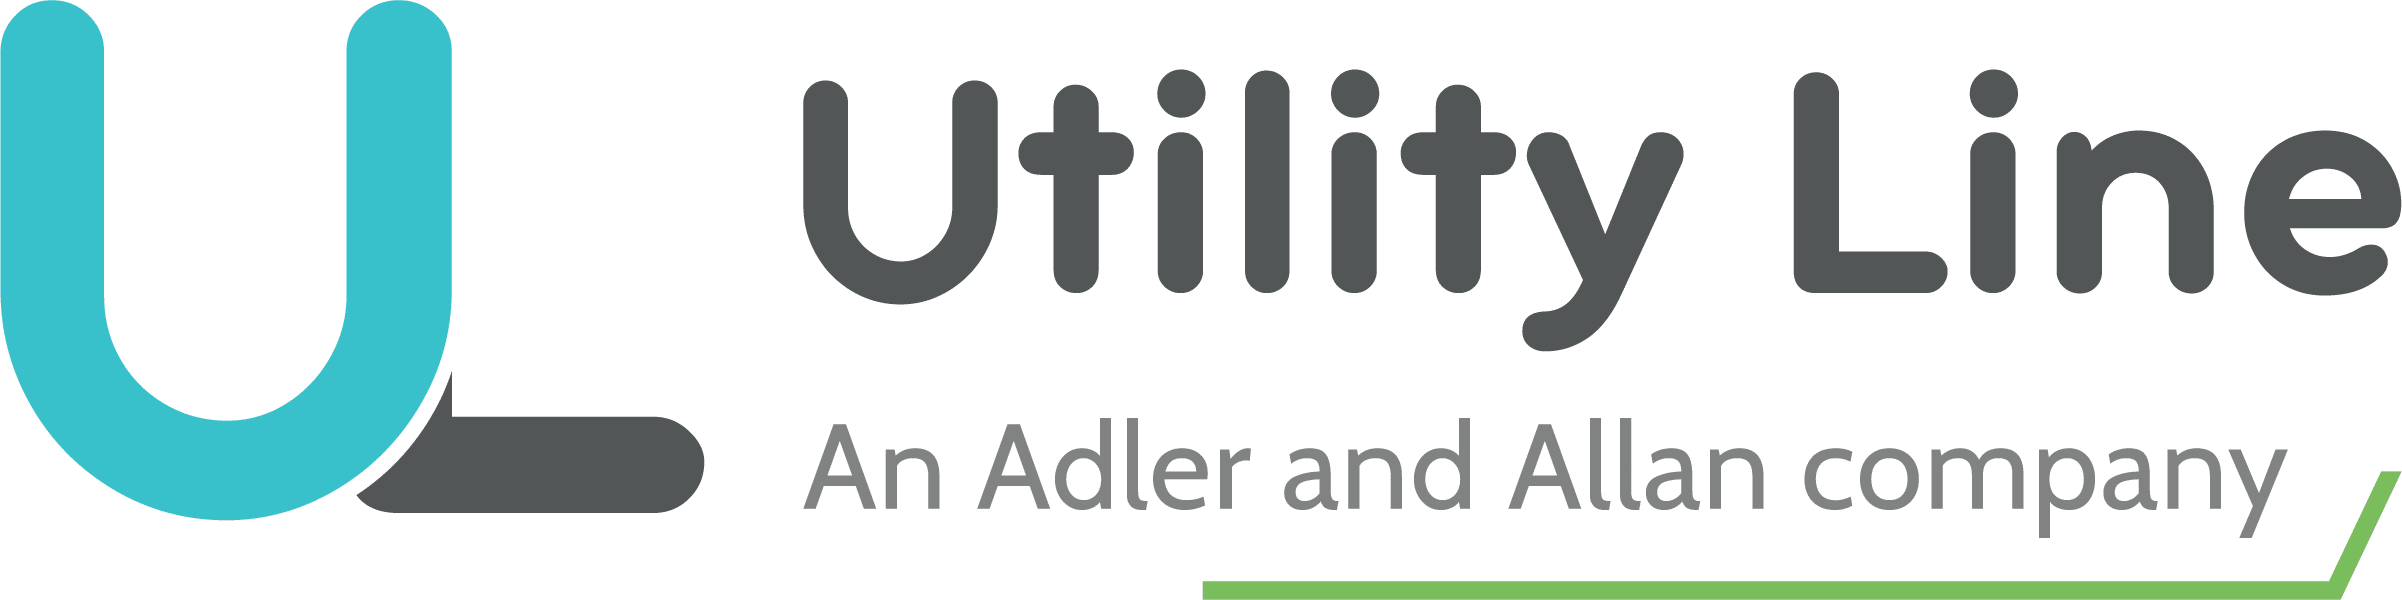 UtilityLine-logo-Group